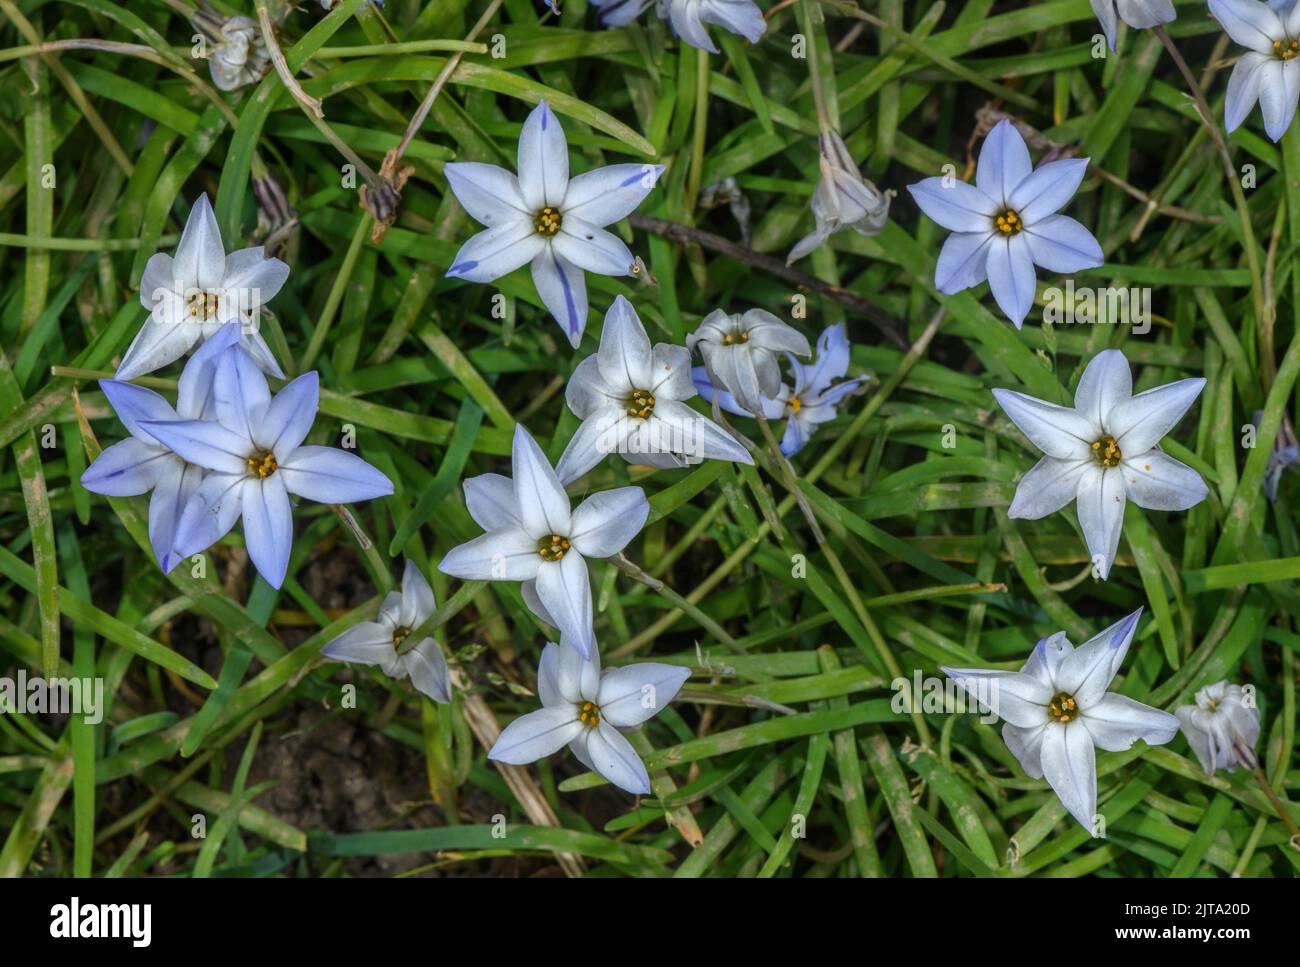 Spring starflower, Ipheion uniflorum, in flower in spring garden. Stock Photo